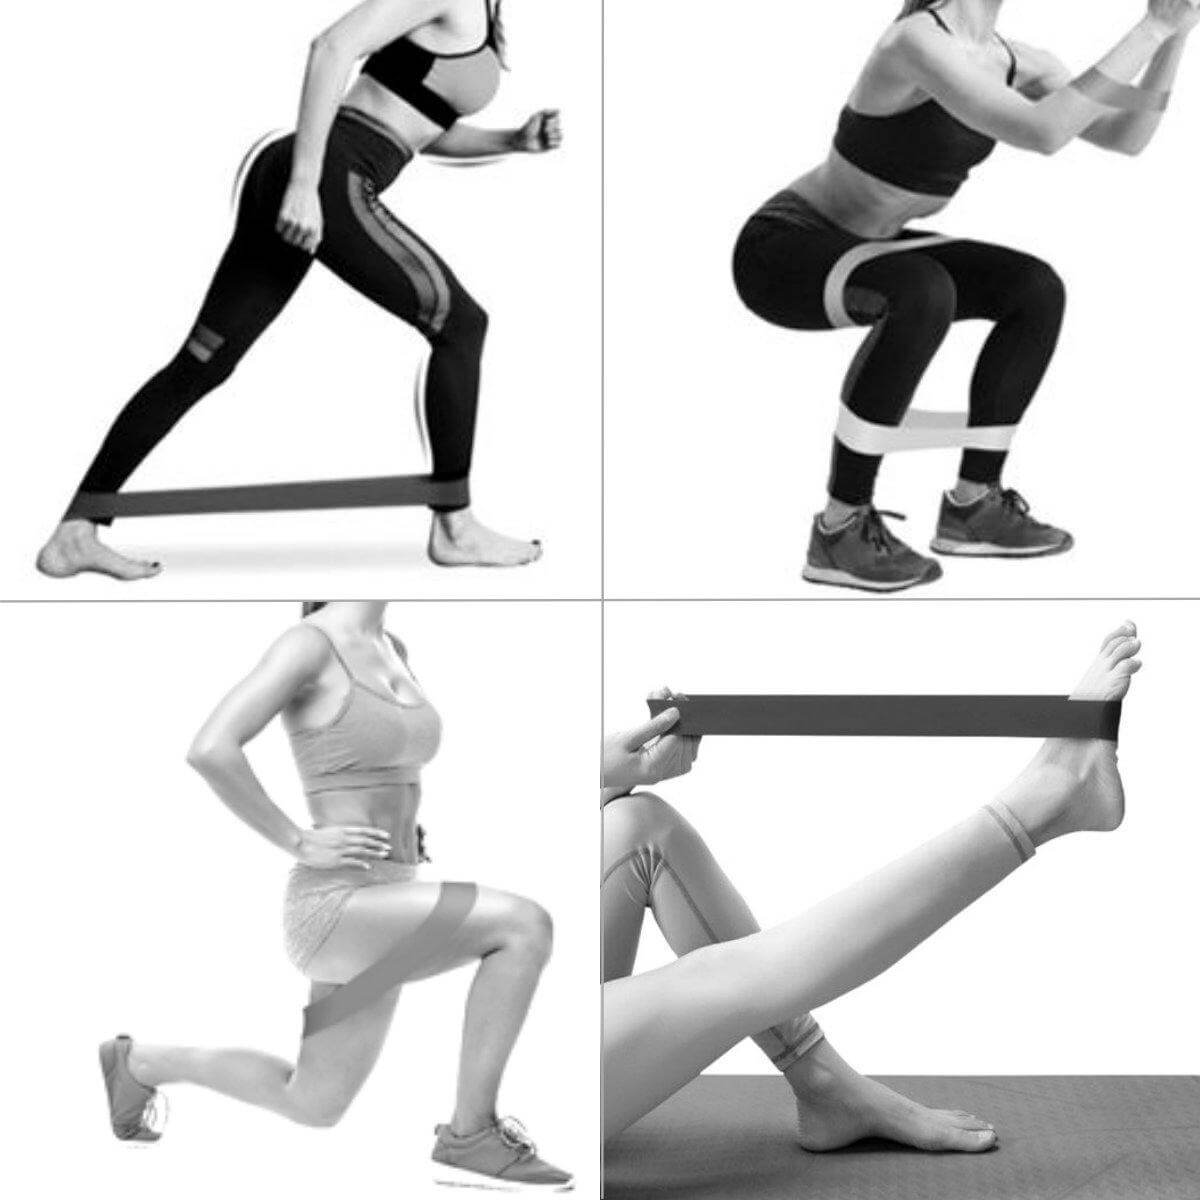 Træningselastikker 5-pack - Bedste kvalitet - 5 fitness-elastikker - Få tips til træning med elastik - Træn mave, baller og lår med resistance bands - Perfekte til fitness, yoga og pilates. 1 sæt - Billig pris